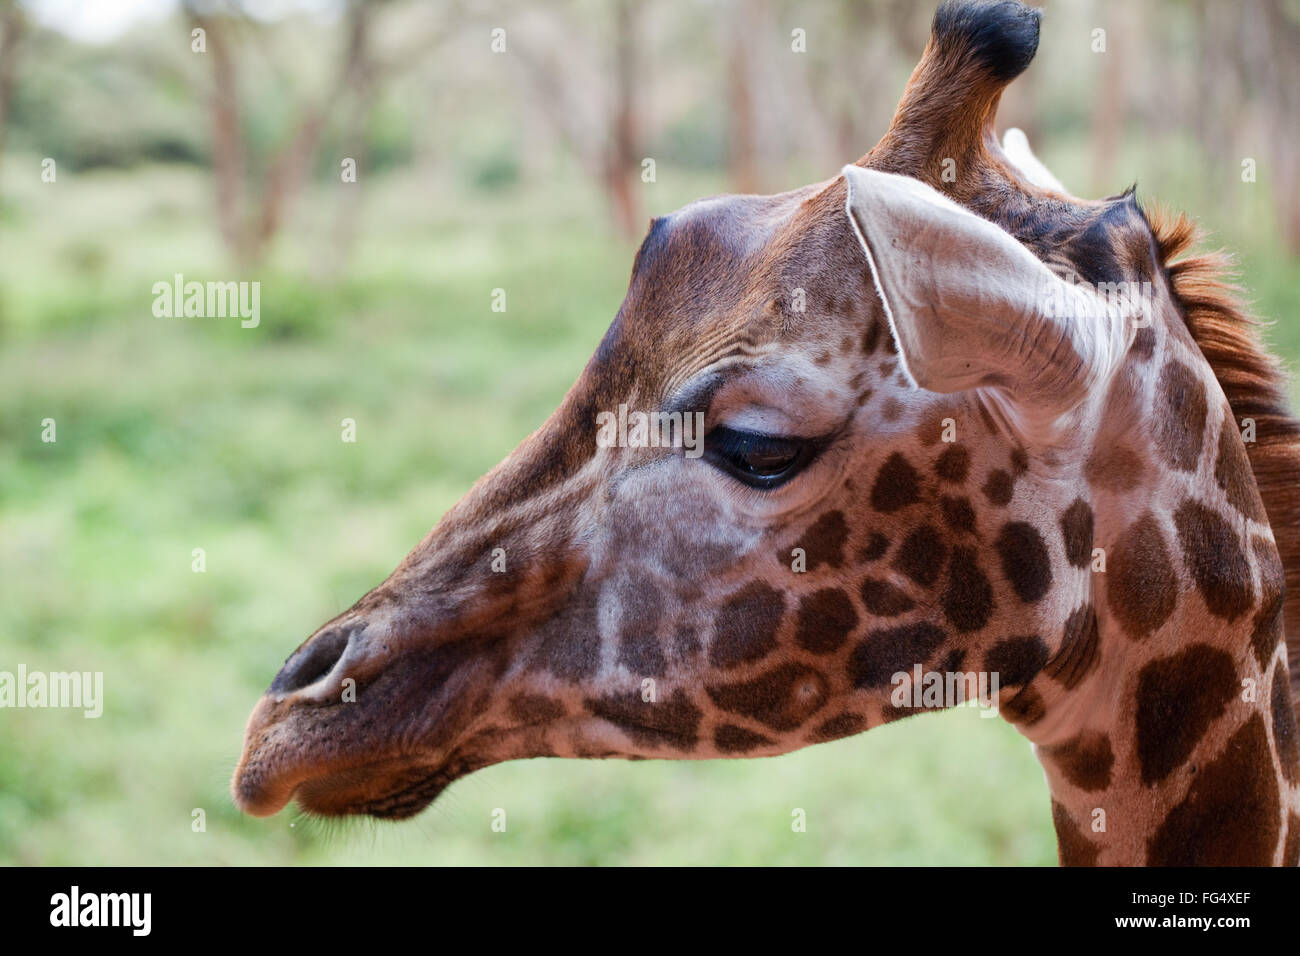 Jirafa reticulada jirafa (camelopardalis reticulata). Cabeza de rasgos faciales, incluyendo OSSICONES (en lugar de cuernos!) Foto de stock